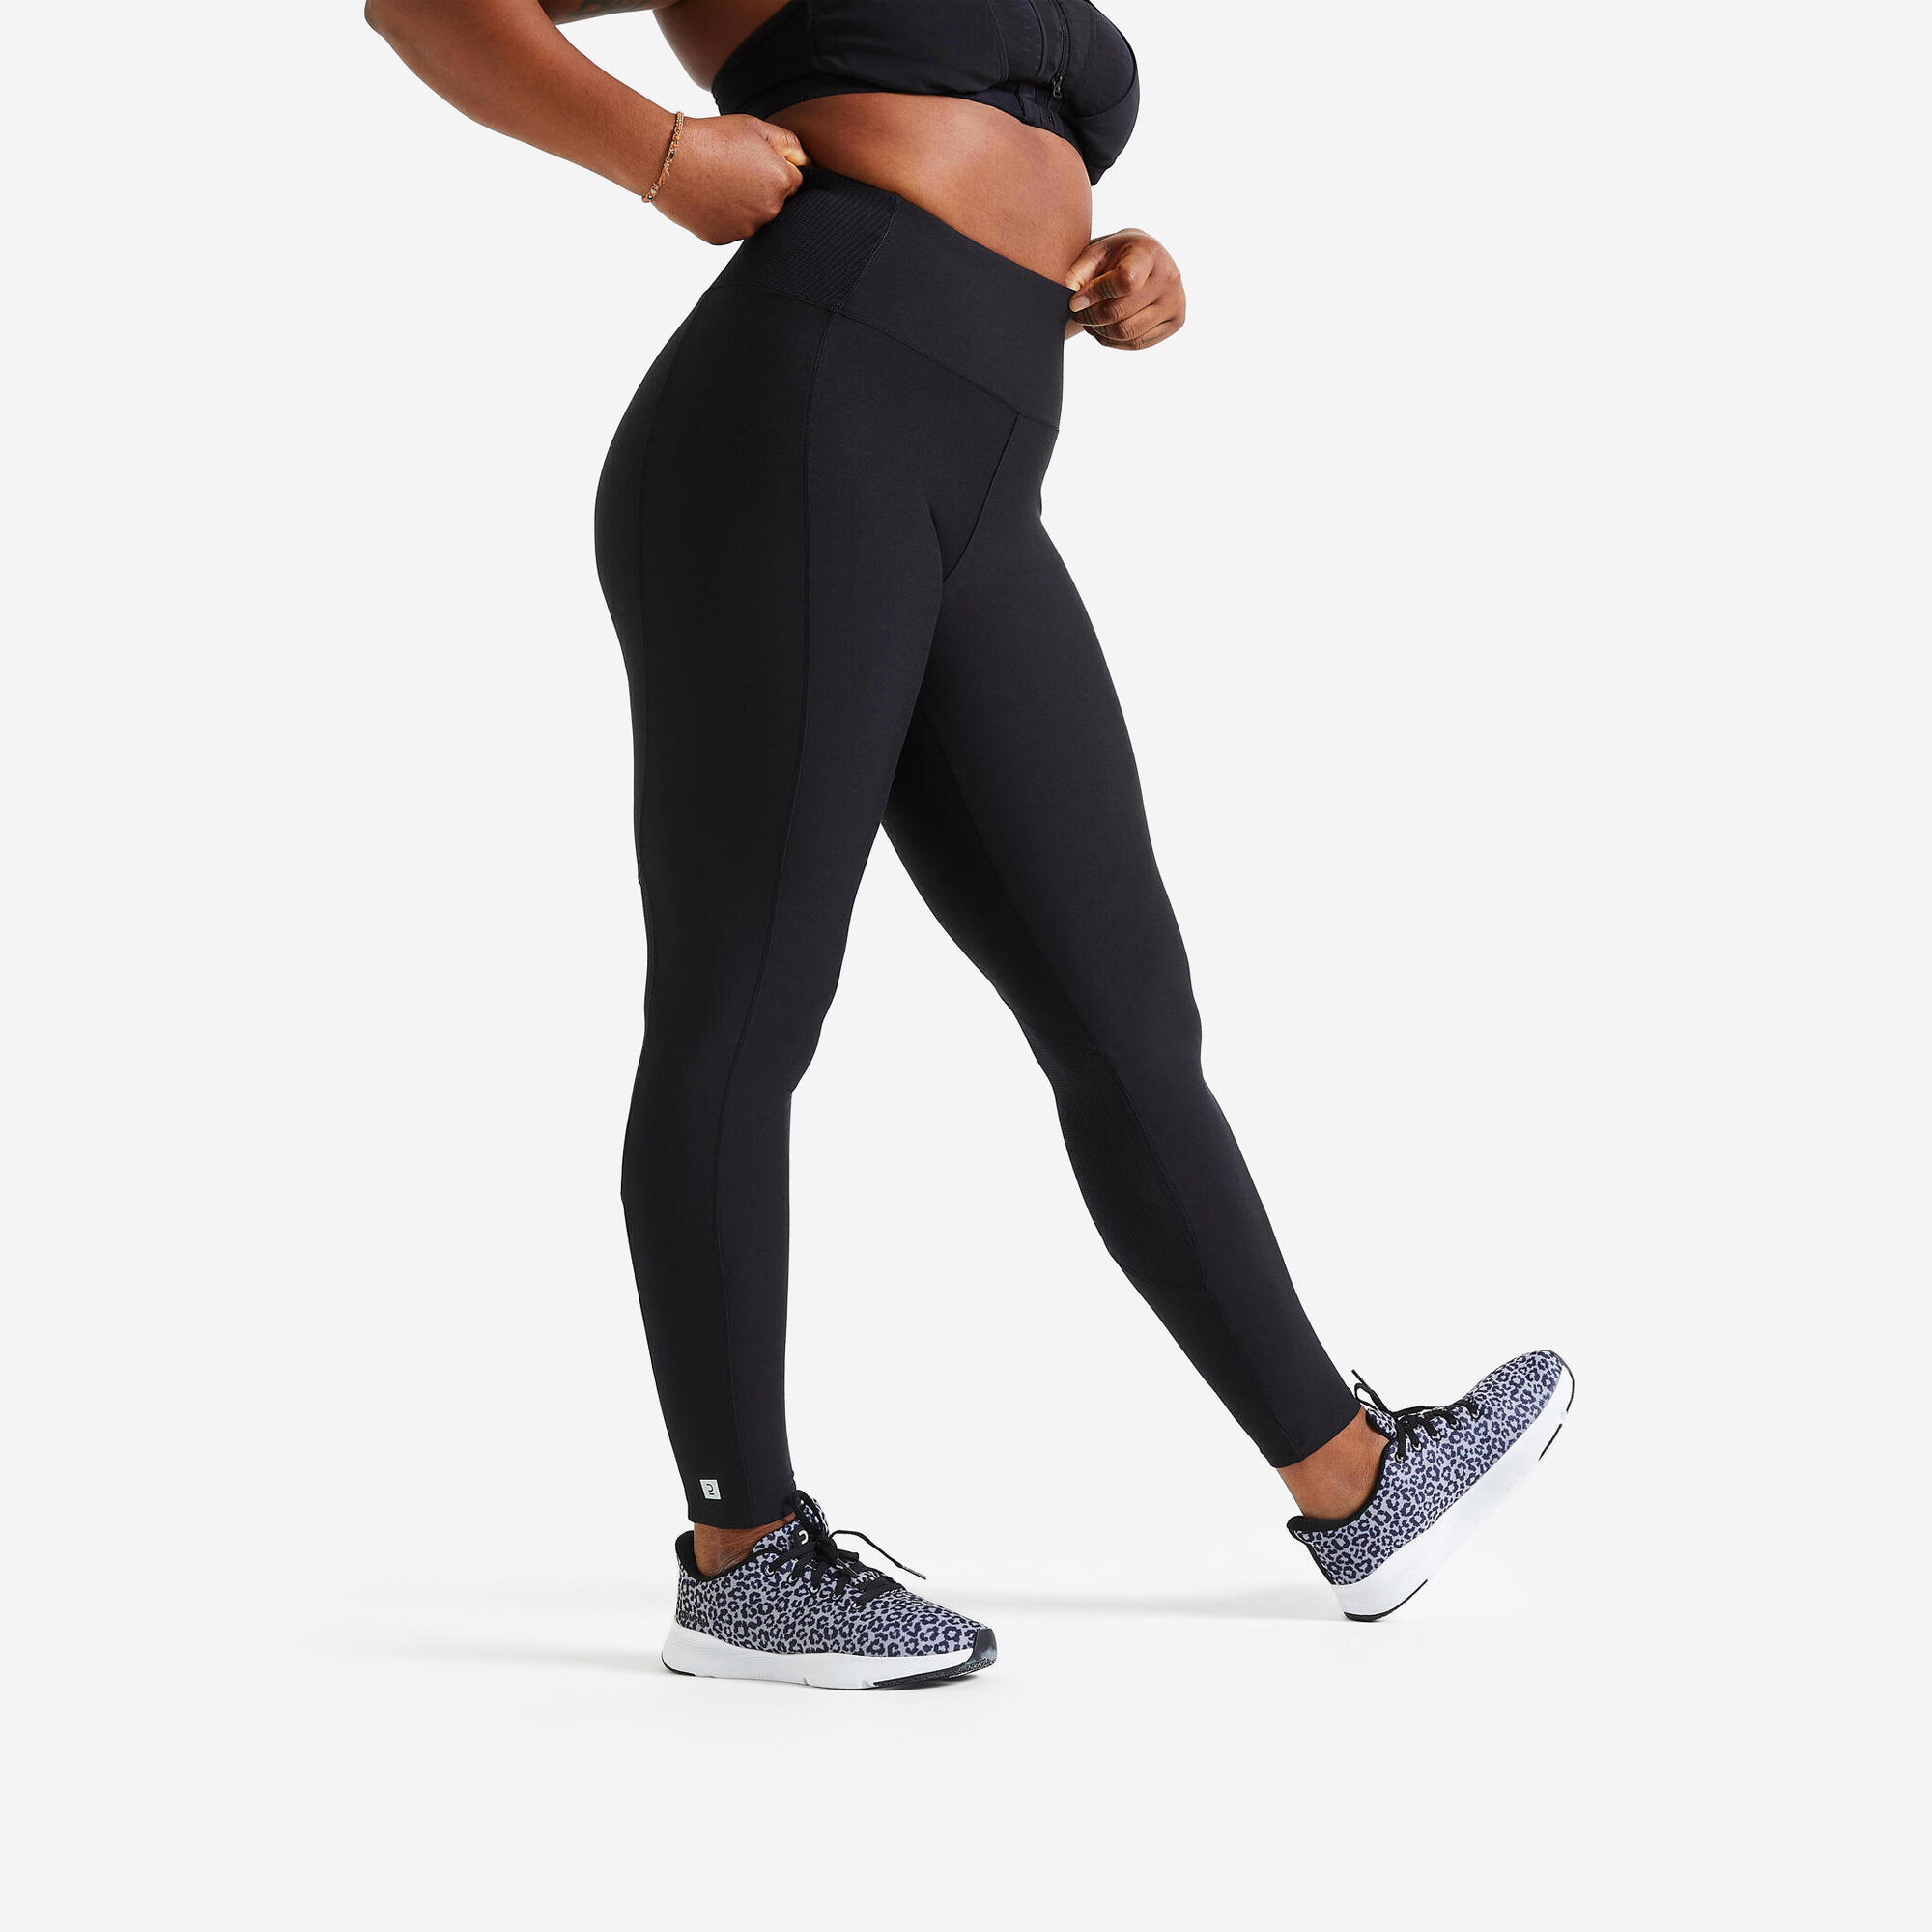 Women's phone pocket fitness high-waisted leggings, black 1/8